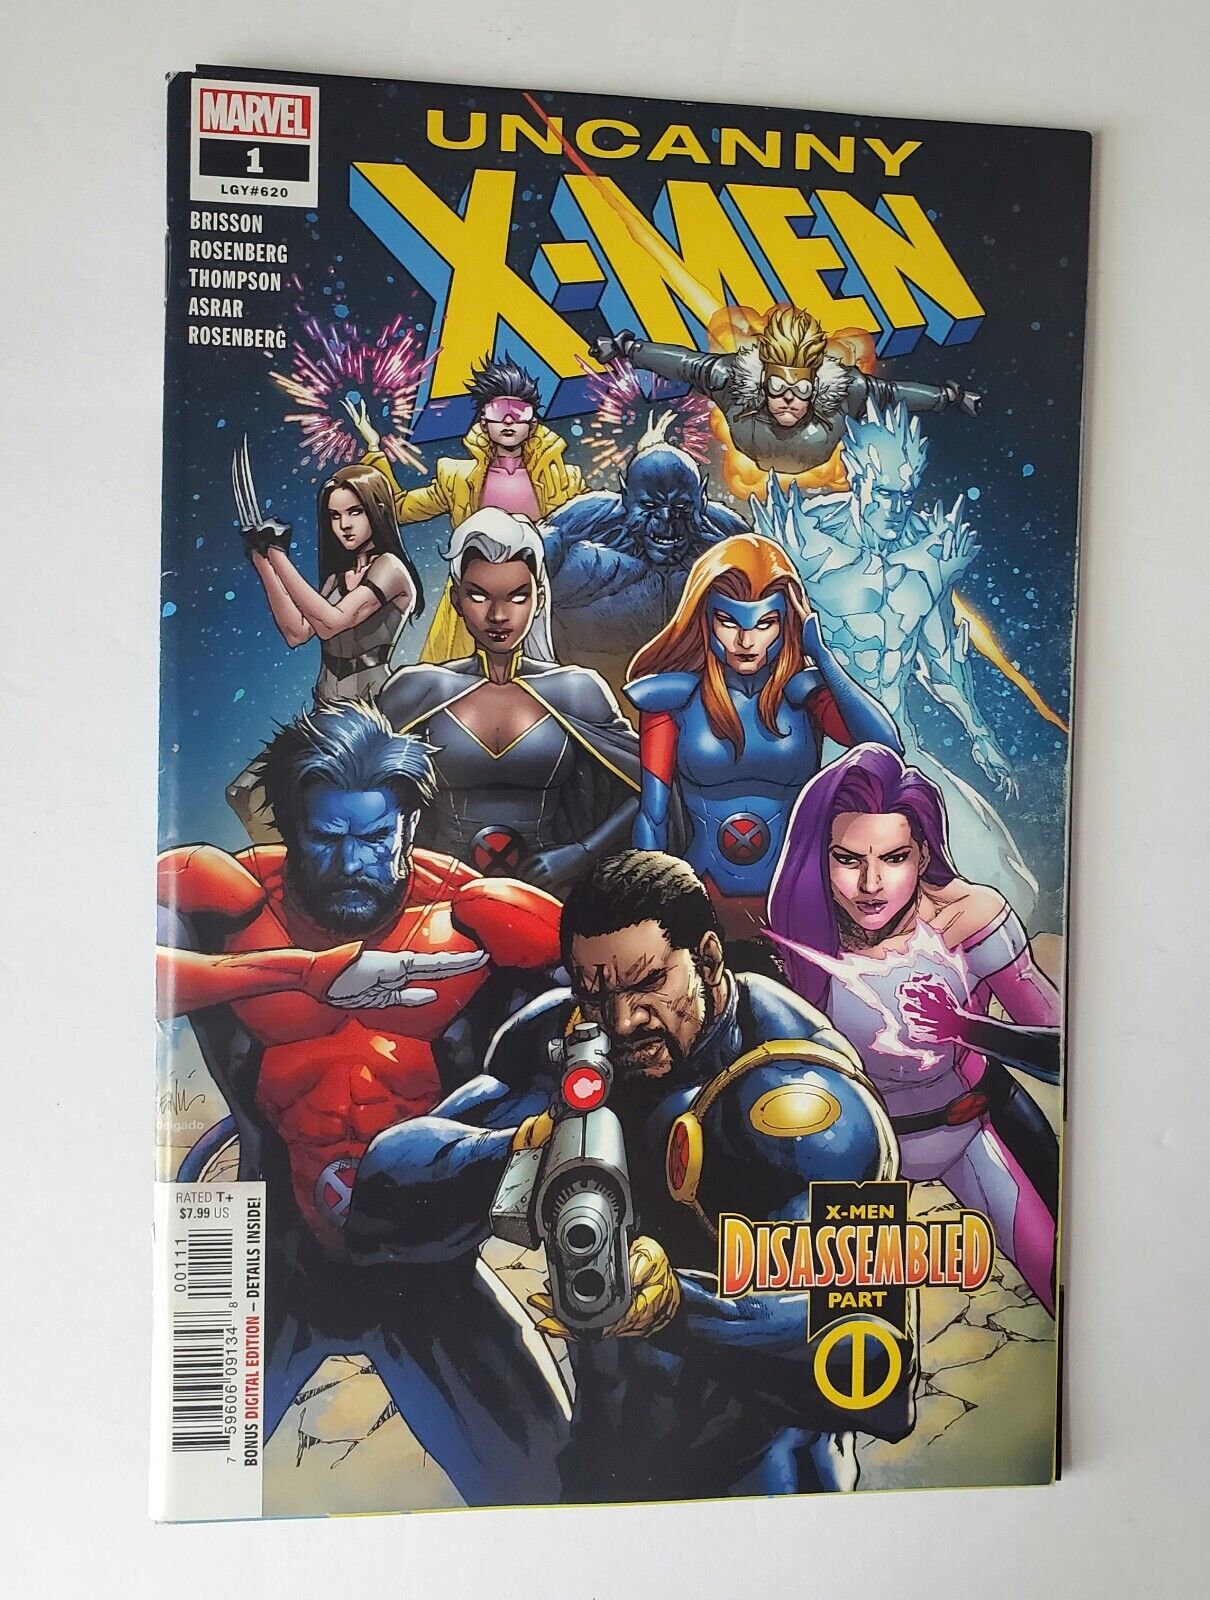 Uncanny X-men #1 (Marvel Comics 2019) X-Men Disassembled Part 1.